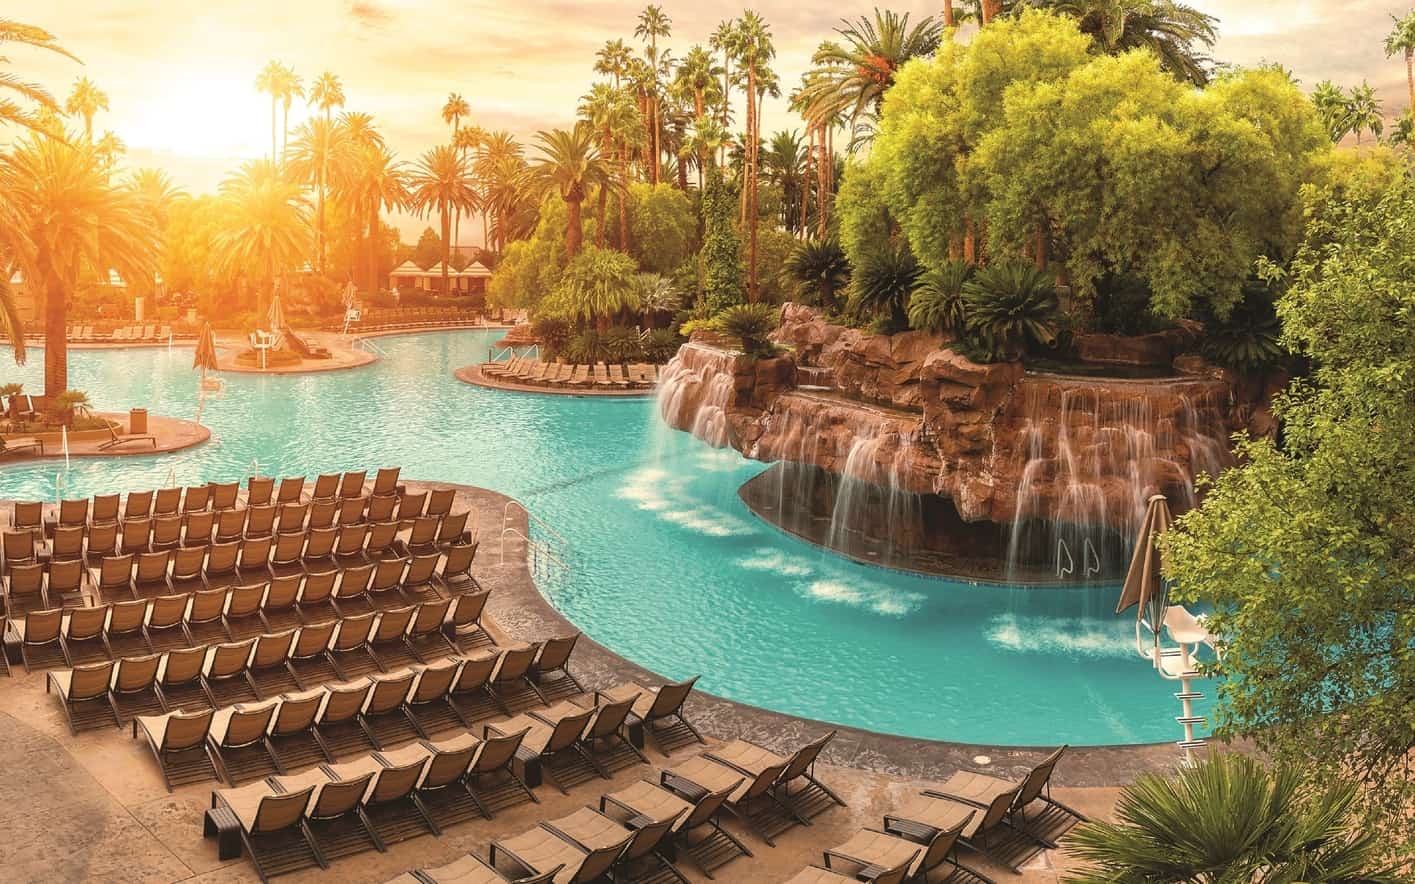 Mirage Pool, best time to visit Las Vegas